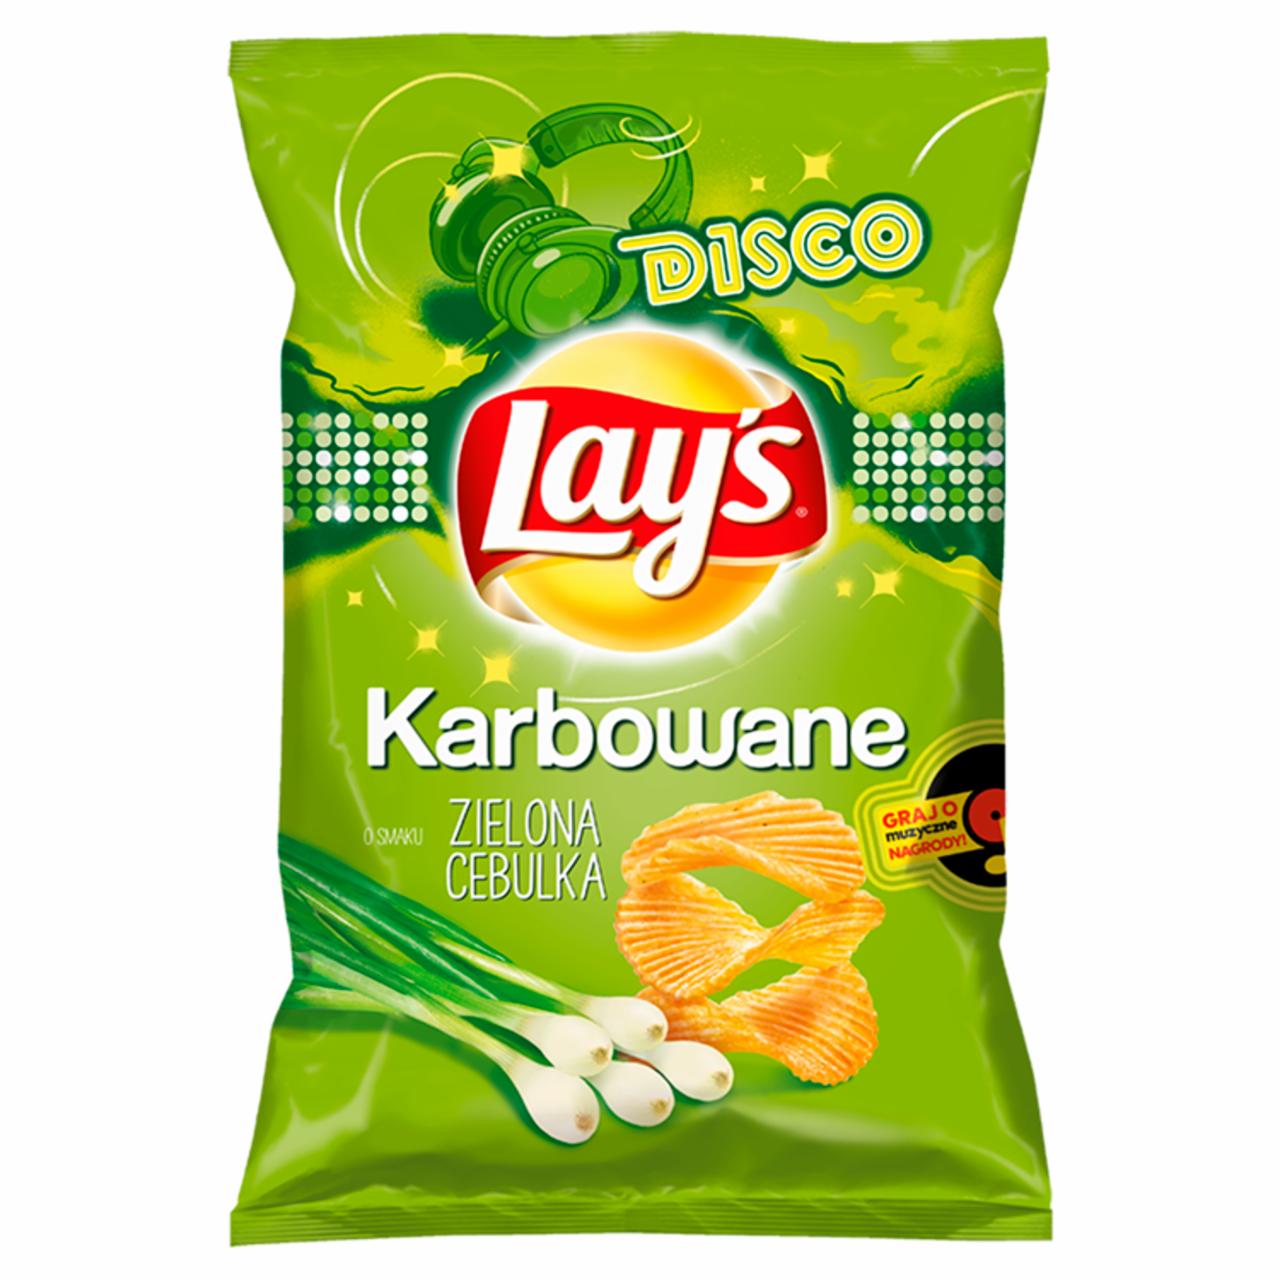 Zdjęcia - Lay's Chipsy ziemniaczane karbowane o smaku zielonej cebulki 130 g